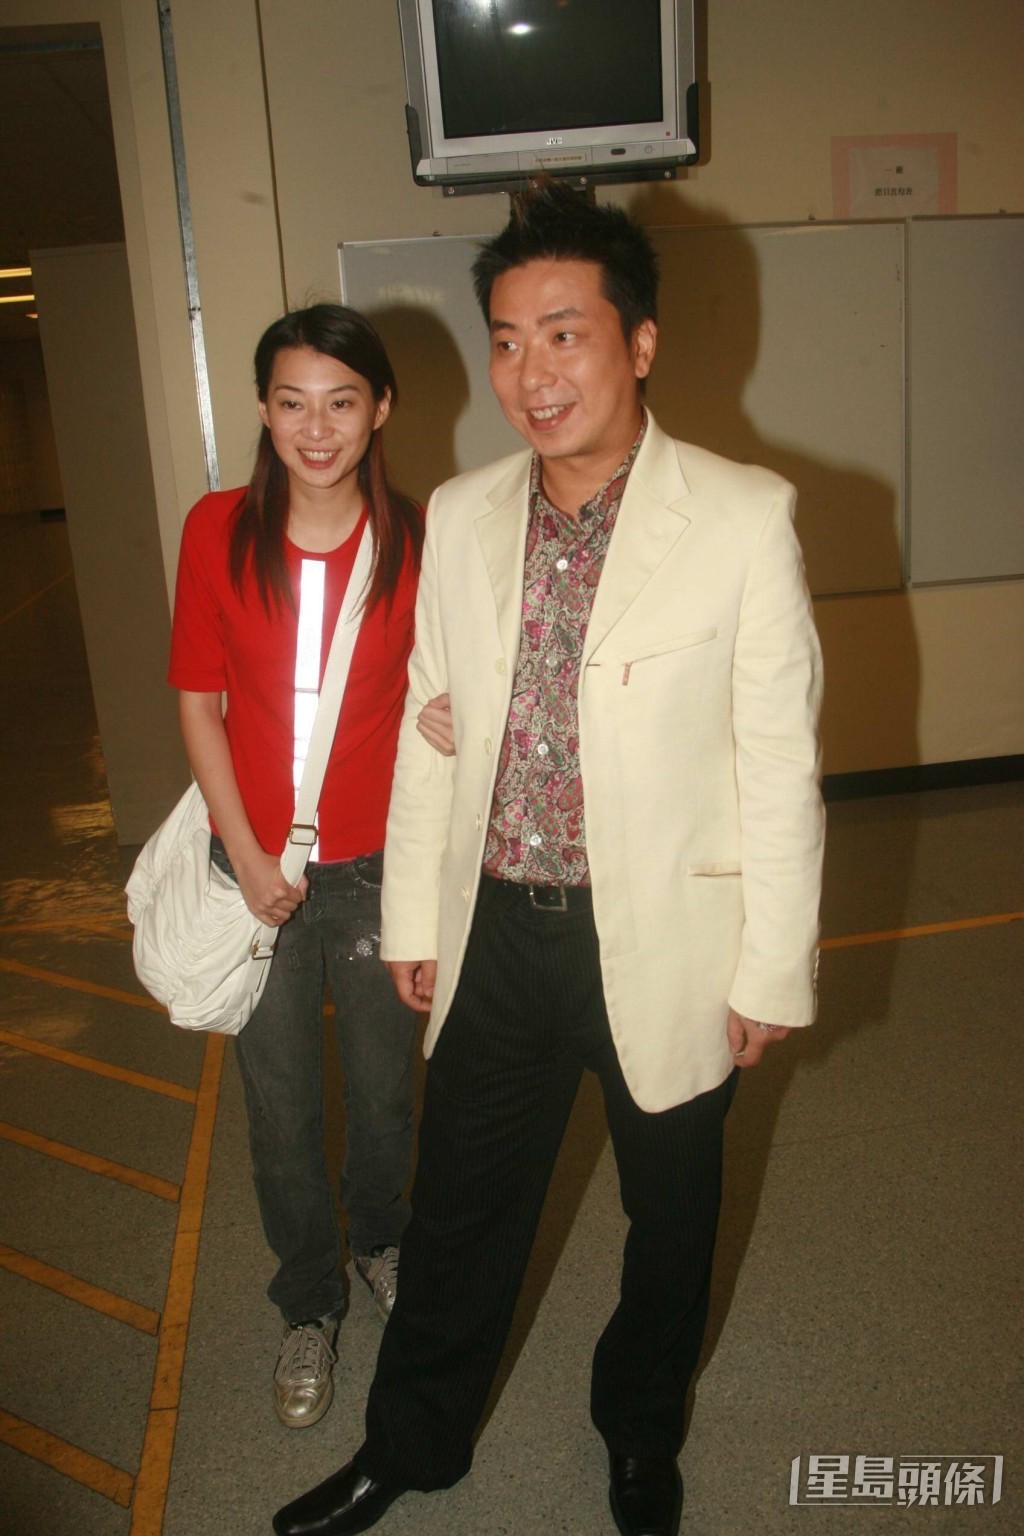 1997年林敏骢与比他年轻18年的落选港姐陈伶俐展开忘年恋。